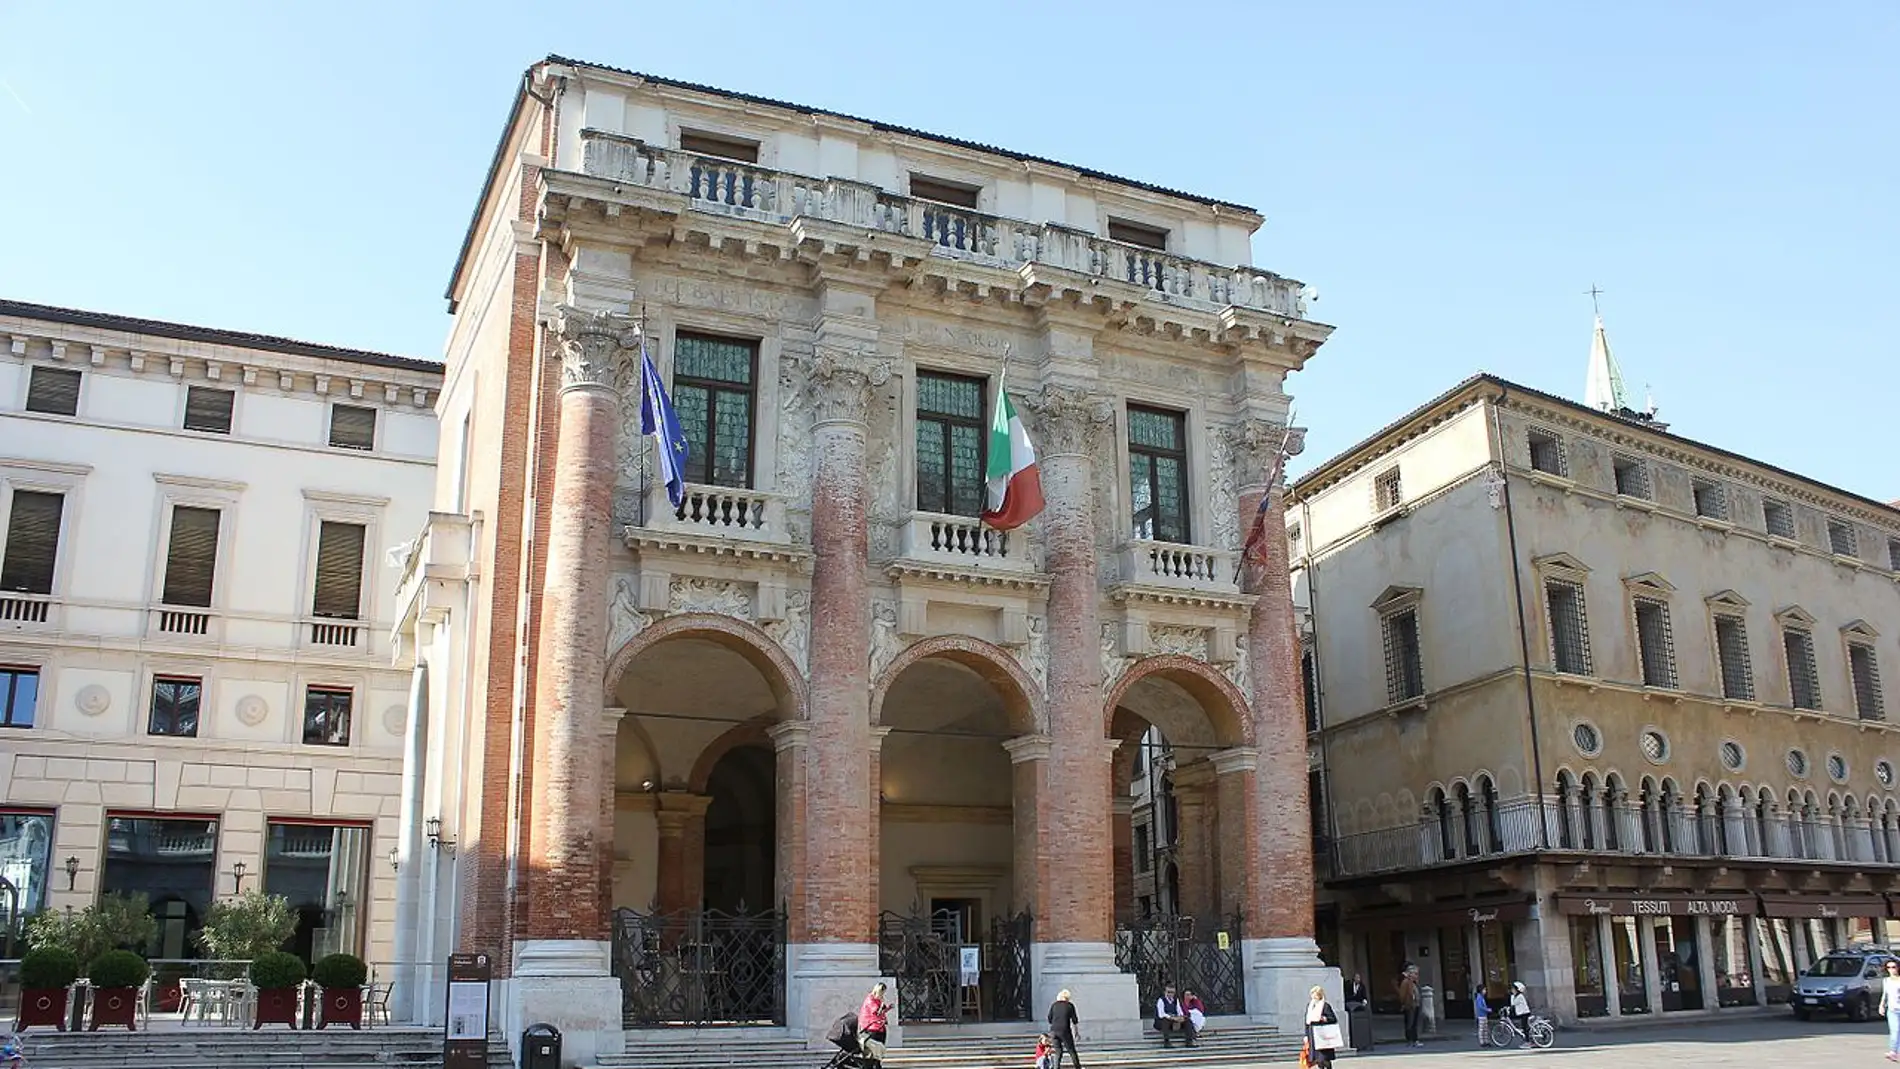 Palazzo del Capitaniato de Vicenza